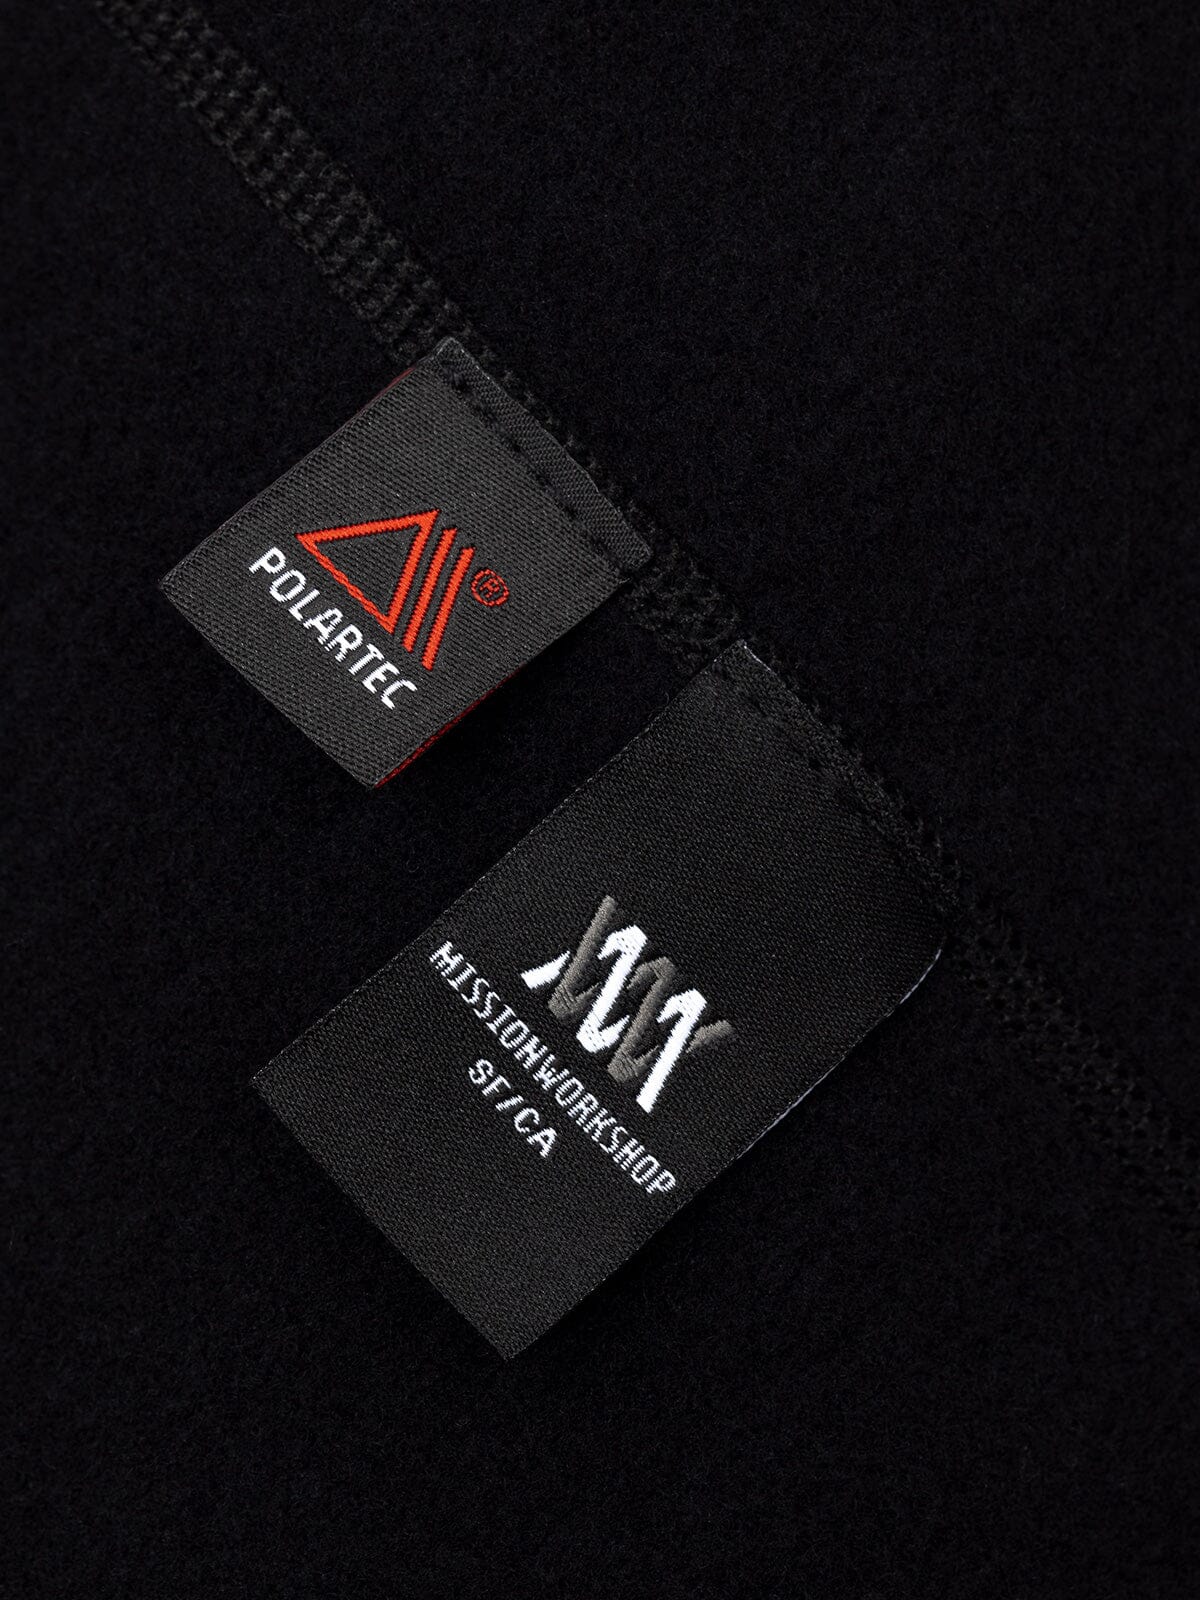 Mason : Power Wool by Mission Workshop - Wetterfeste Taschen und technische Bekleidung - San Francisco & Los Angeles - Für die Ewigkeit gebaut - Garantiert